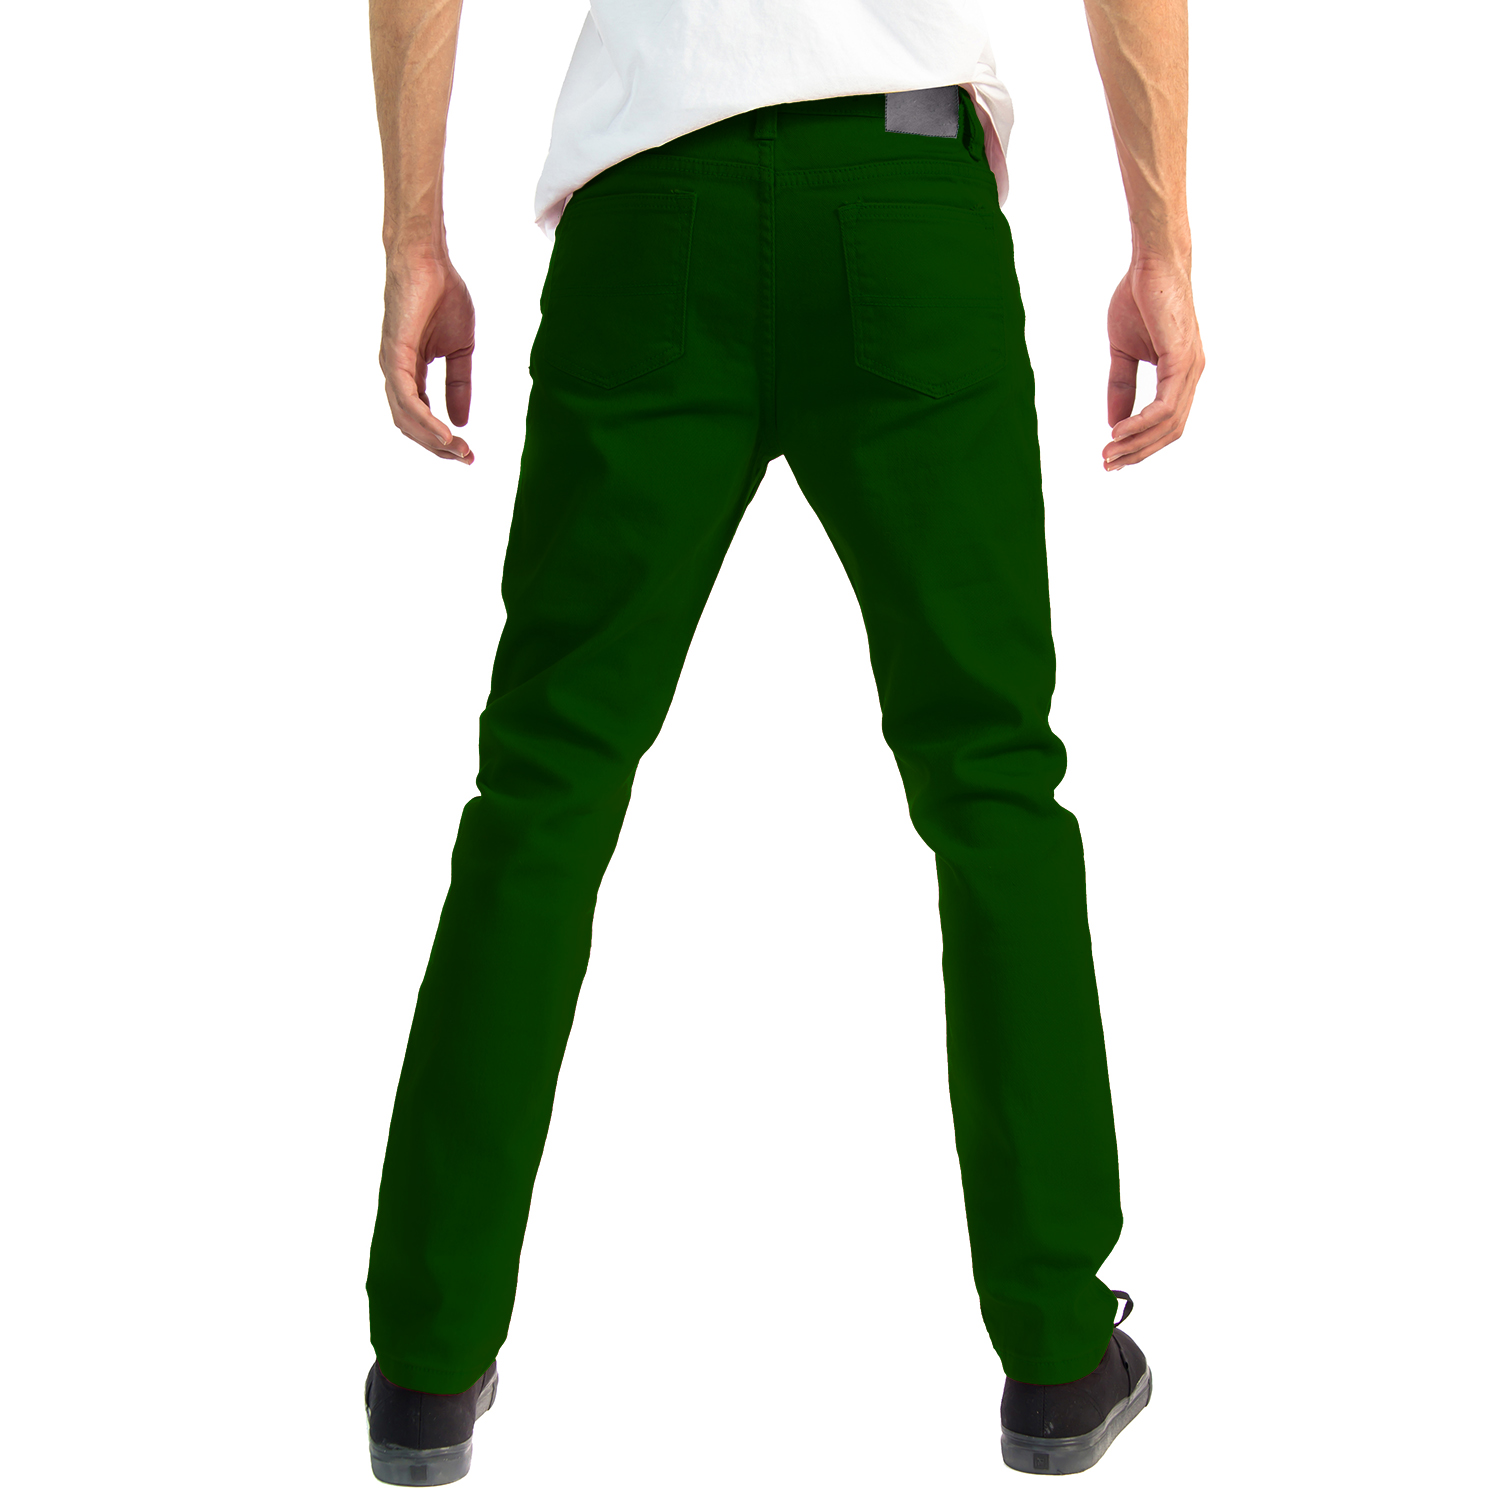 Alta Designer Fashion Mens Slim Fit Skinny Denim Jeans - Green - Size 30 - image 3 of 3